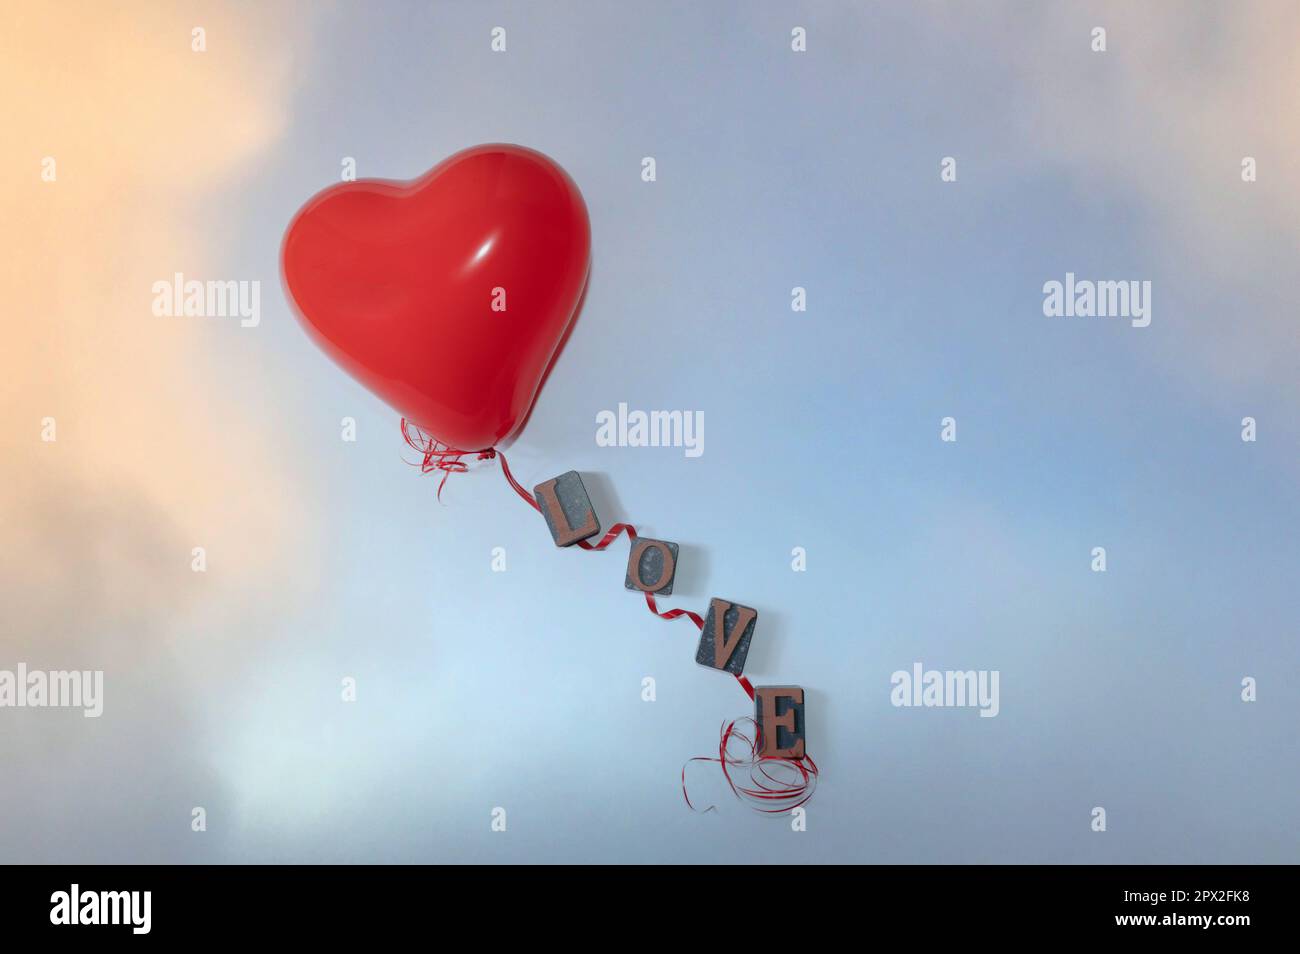 Palloncino a forma di cuore rosso e cordicella rossa con lettere per la parola amore su sfondo azzurro Foto Stock